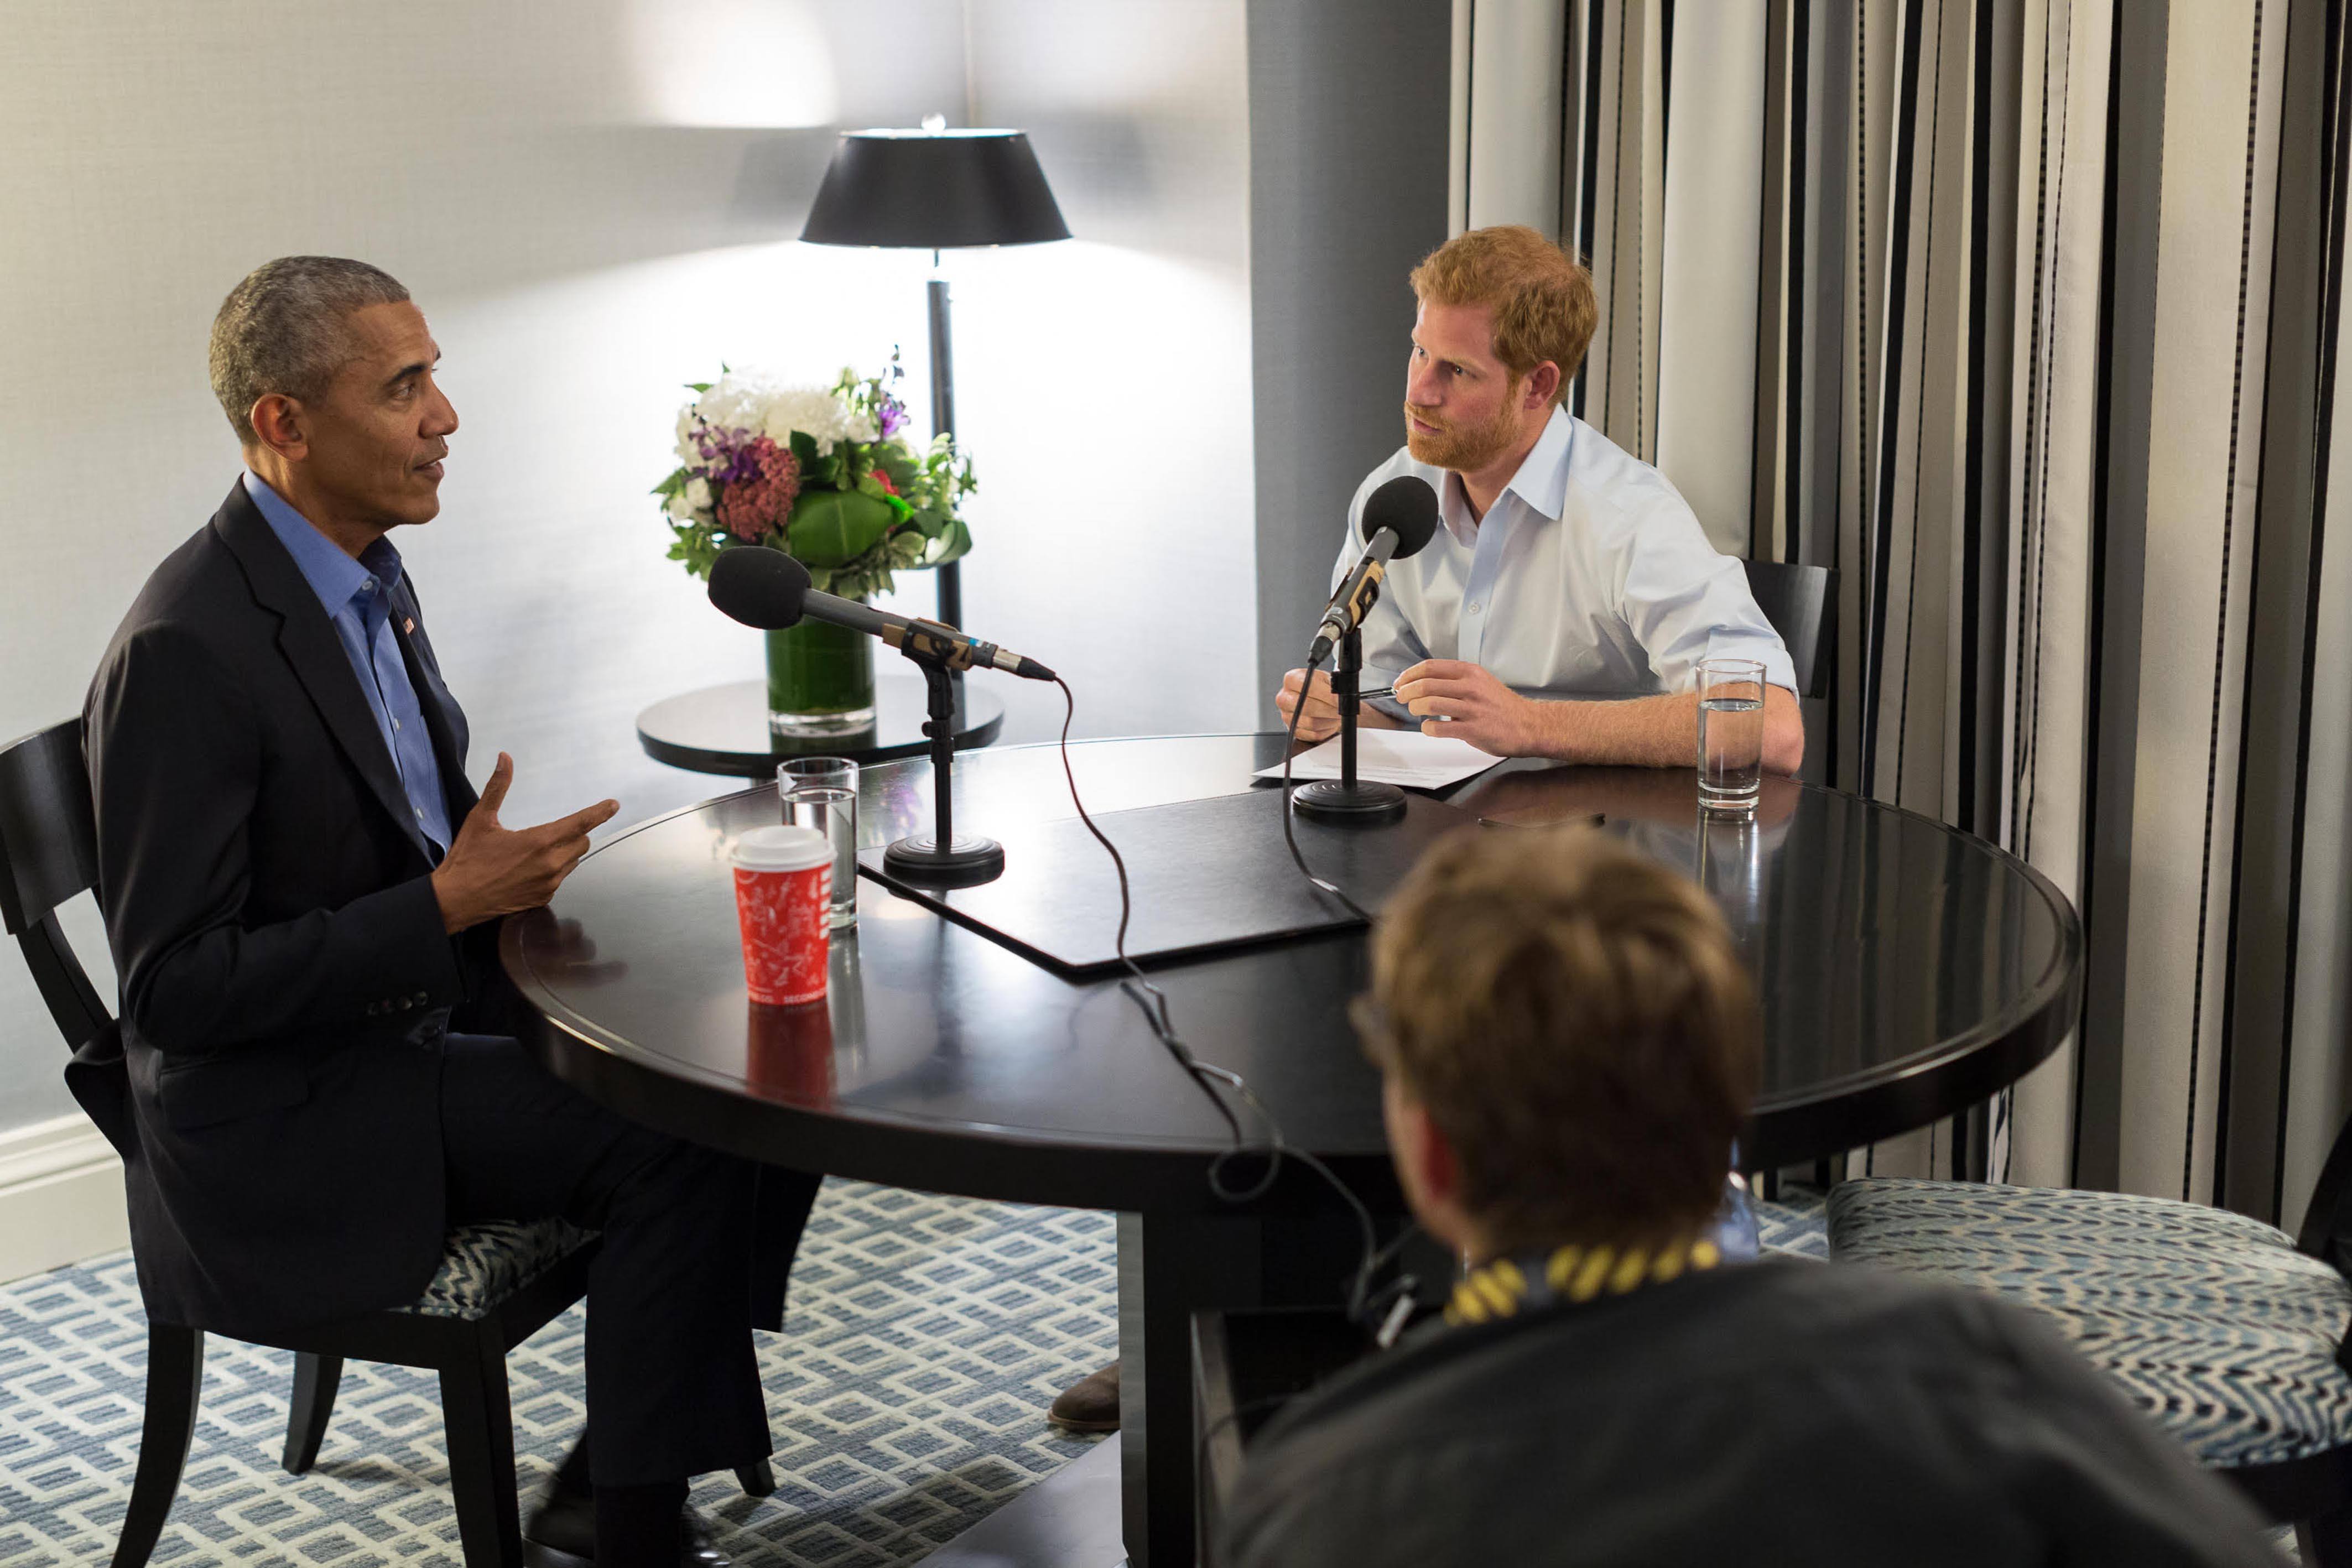 Prince Harry interviews former US President Barack Obama